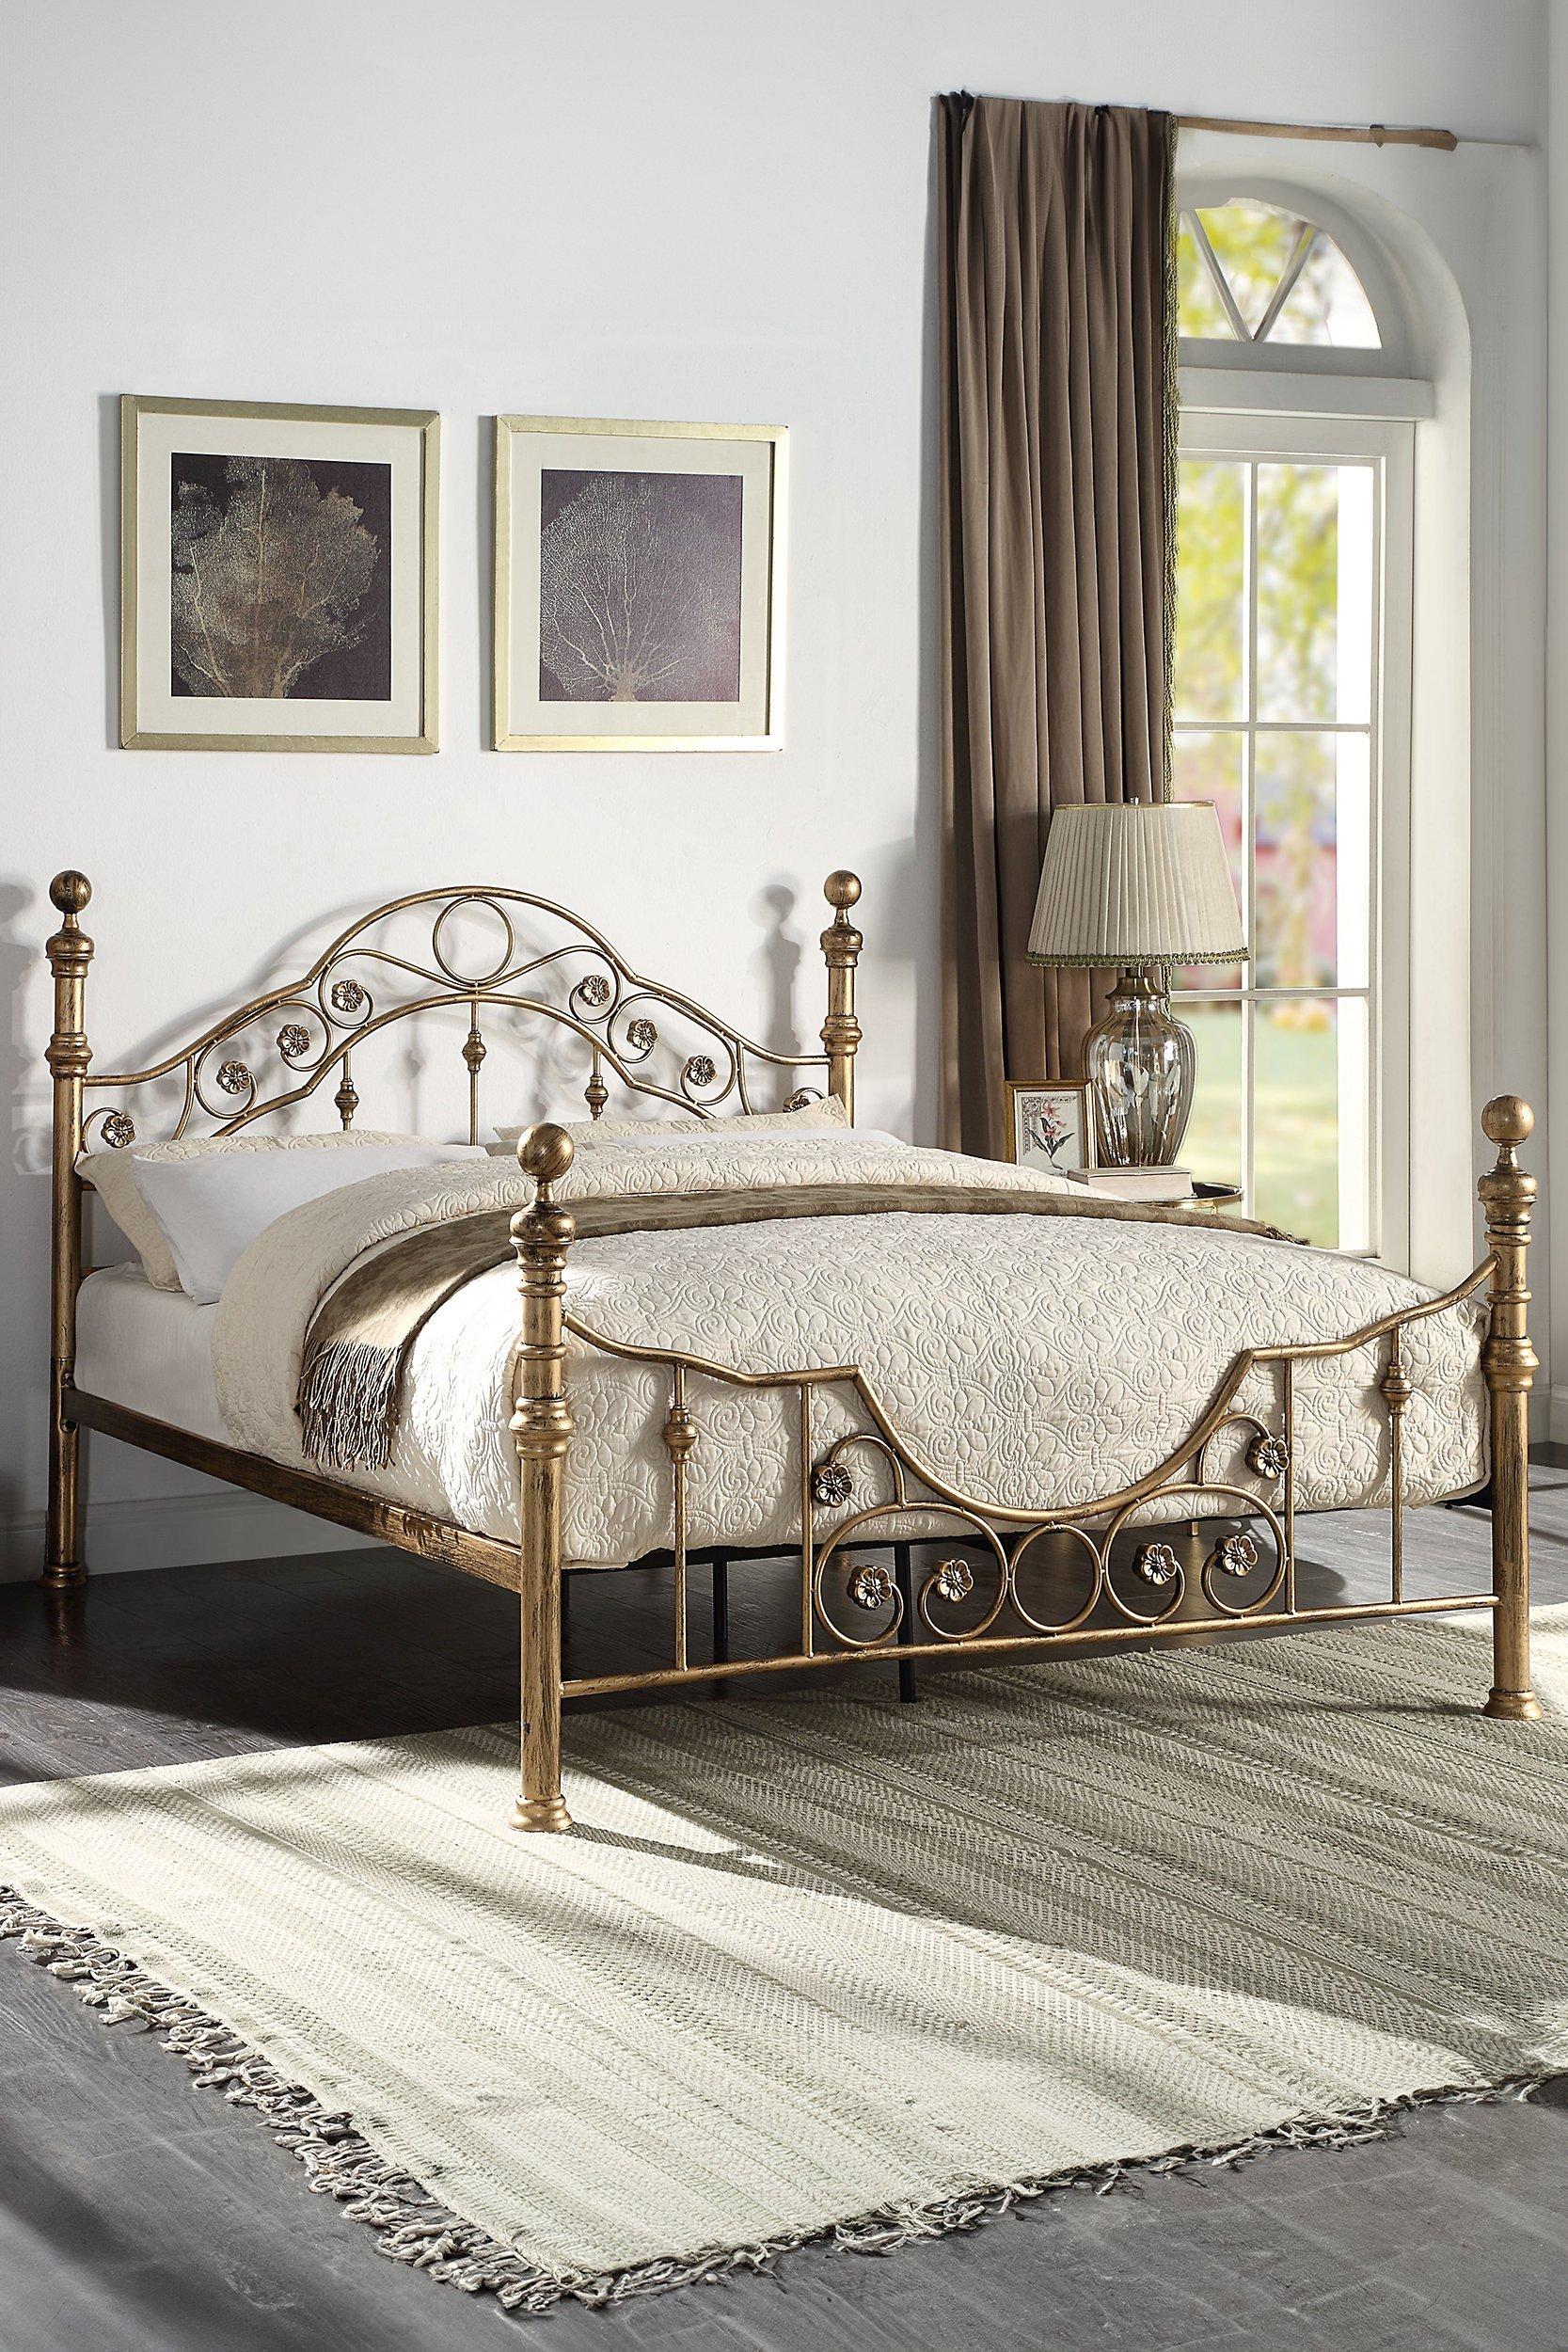 Letchworth Vintage Victorian Style Antique Metal Bed Frame